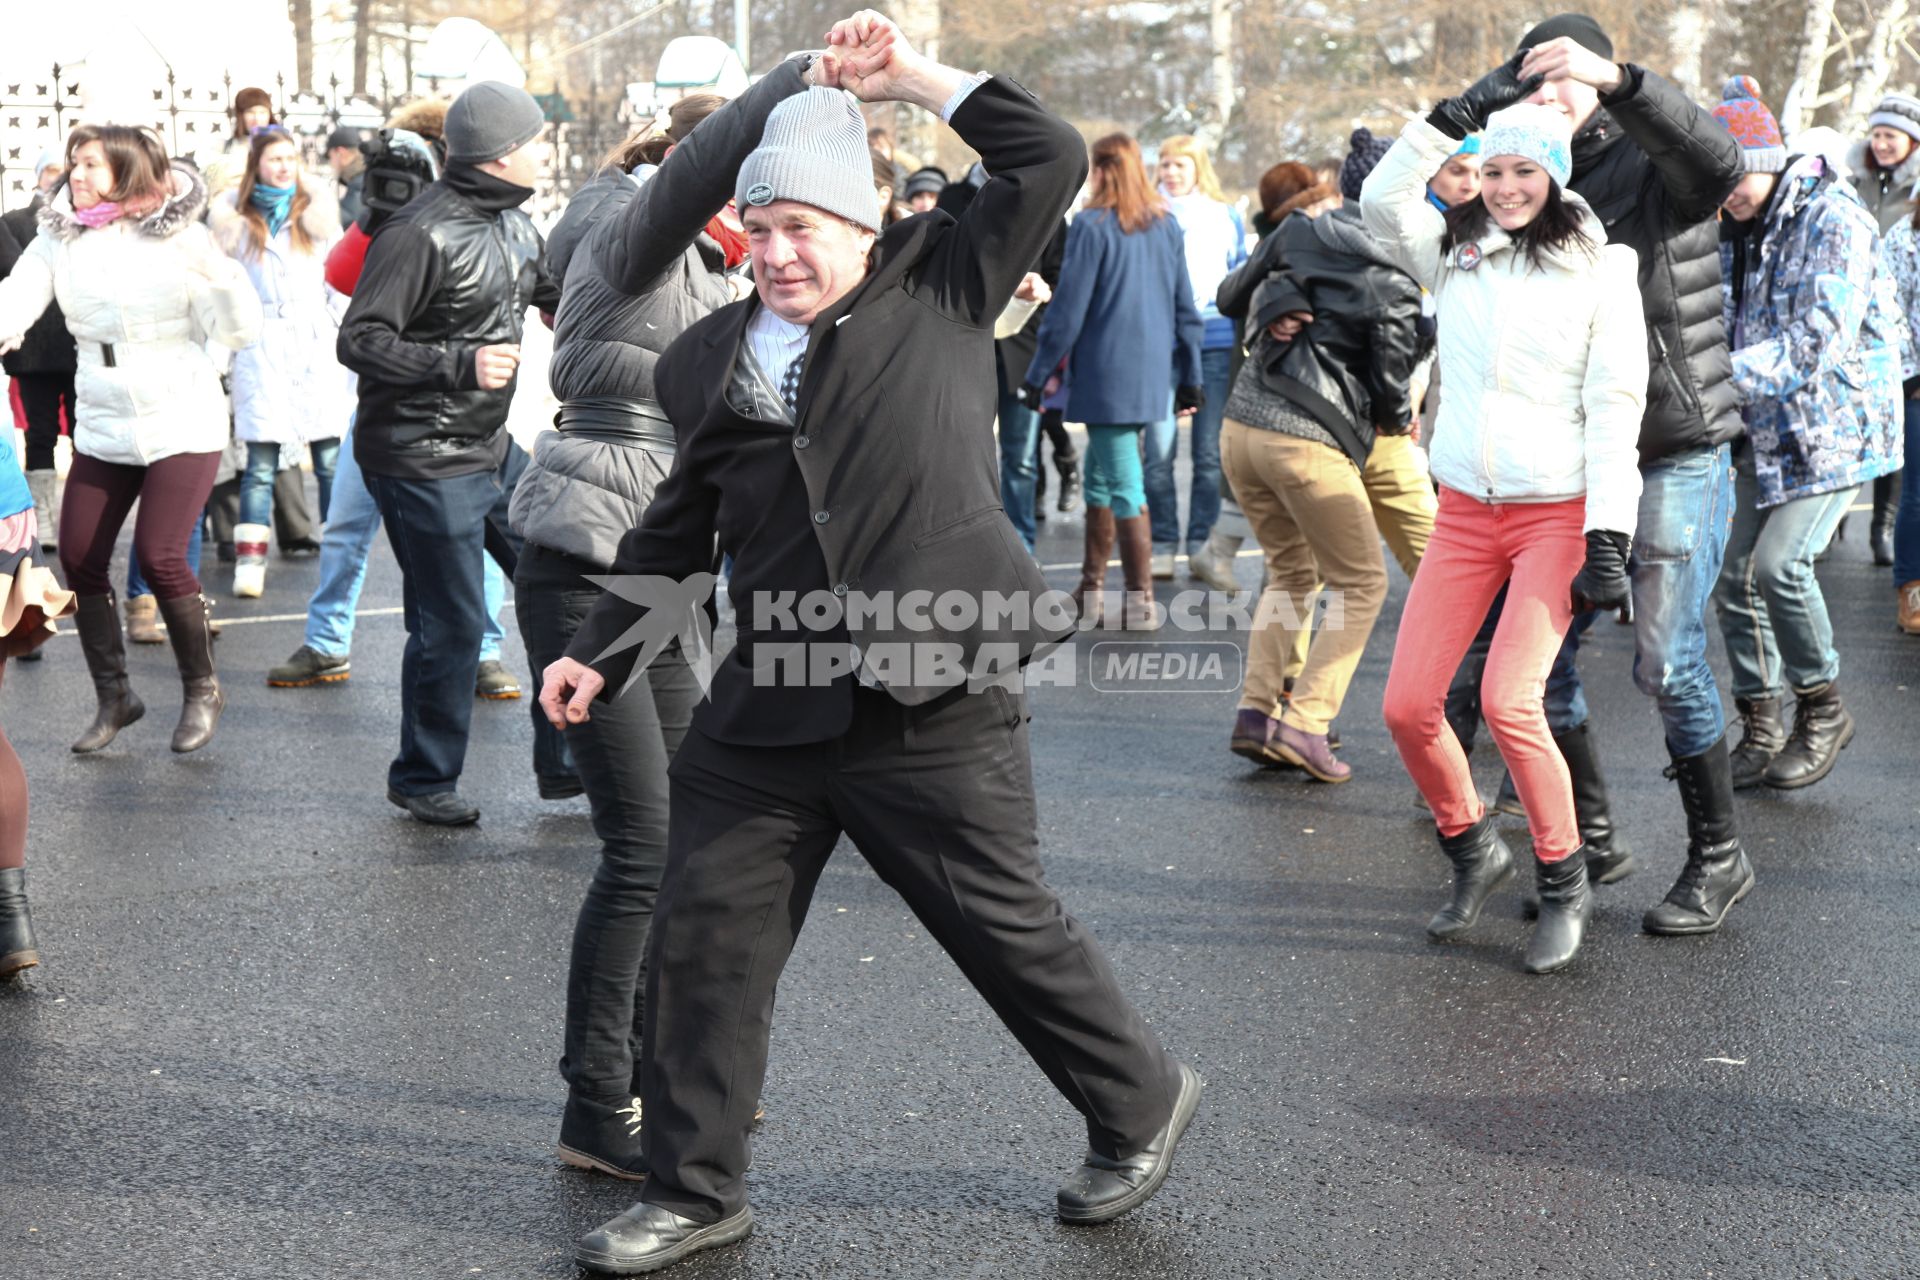 Молодежное движение `Буги-вуги Ярославль` организовало танцевальный флешмоб под открытым небом. На снимке: пенсионеры и молодежь танцуют буги-вуги.